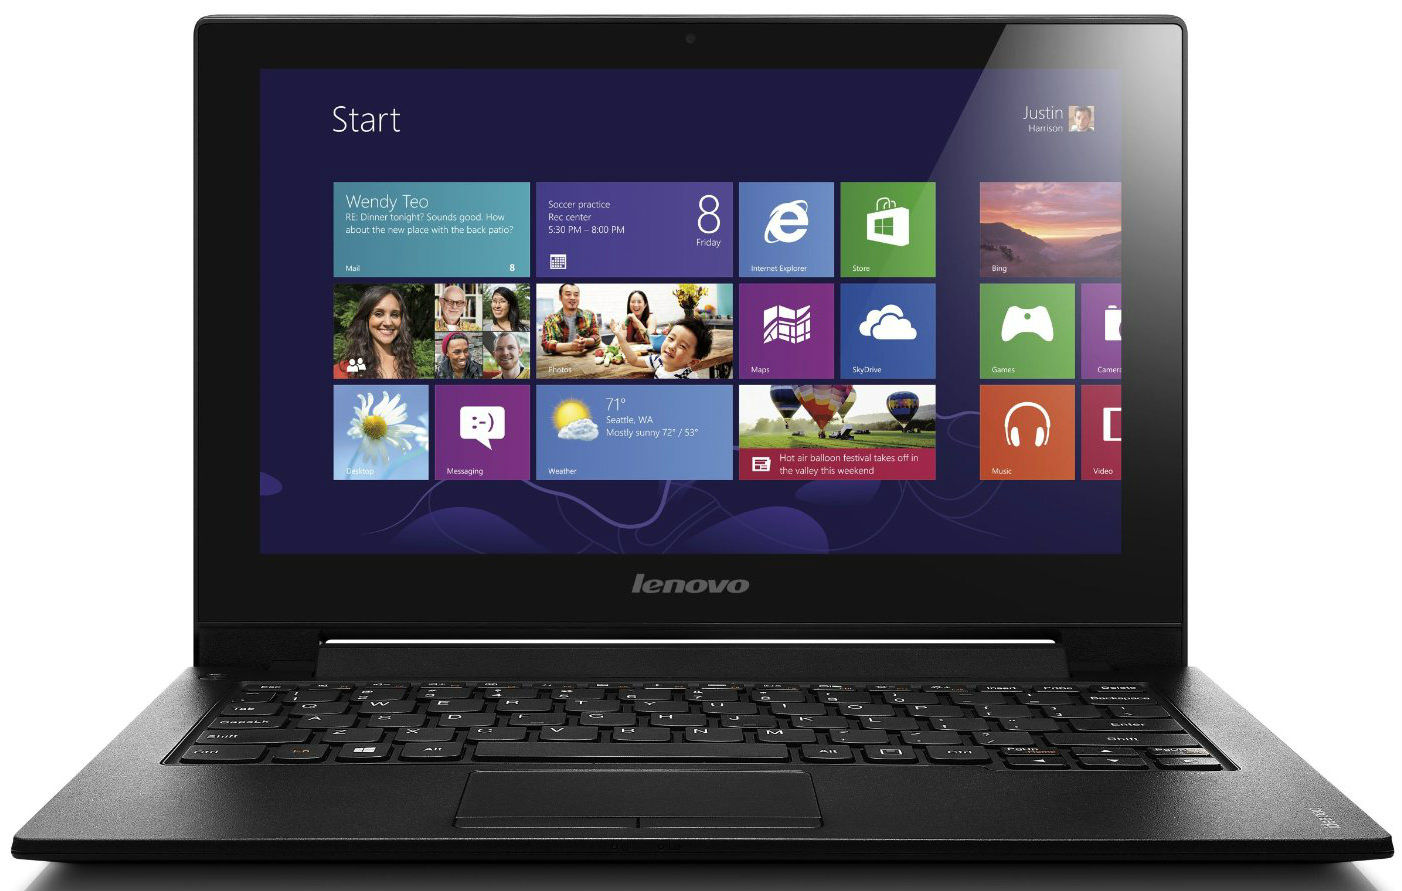 Lenovo Ideapad S210 (59-387503) Laptop (Pentium Dual Core/4 GB/500 GB/Windows 8) Price